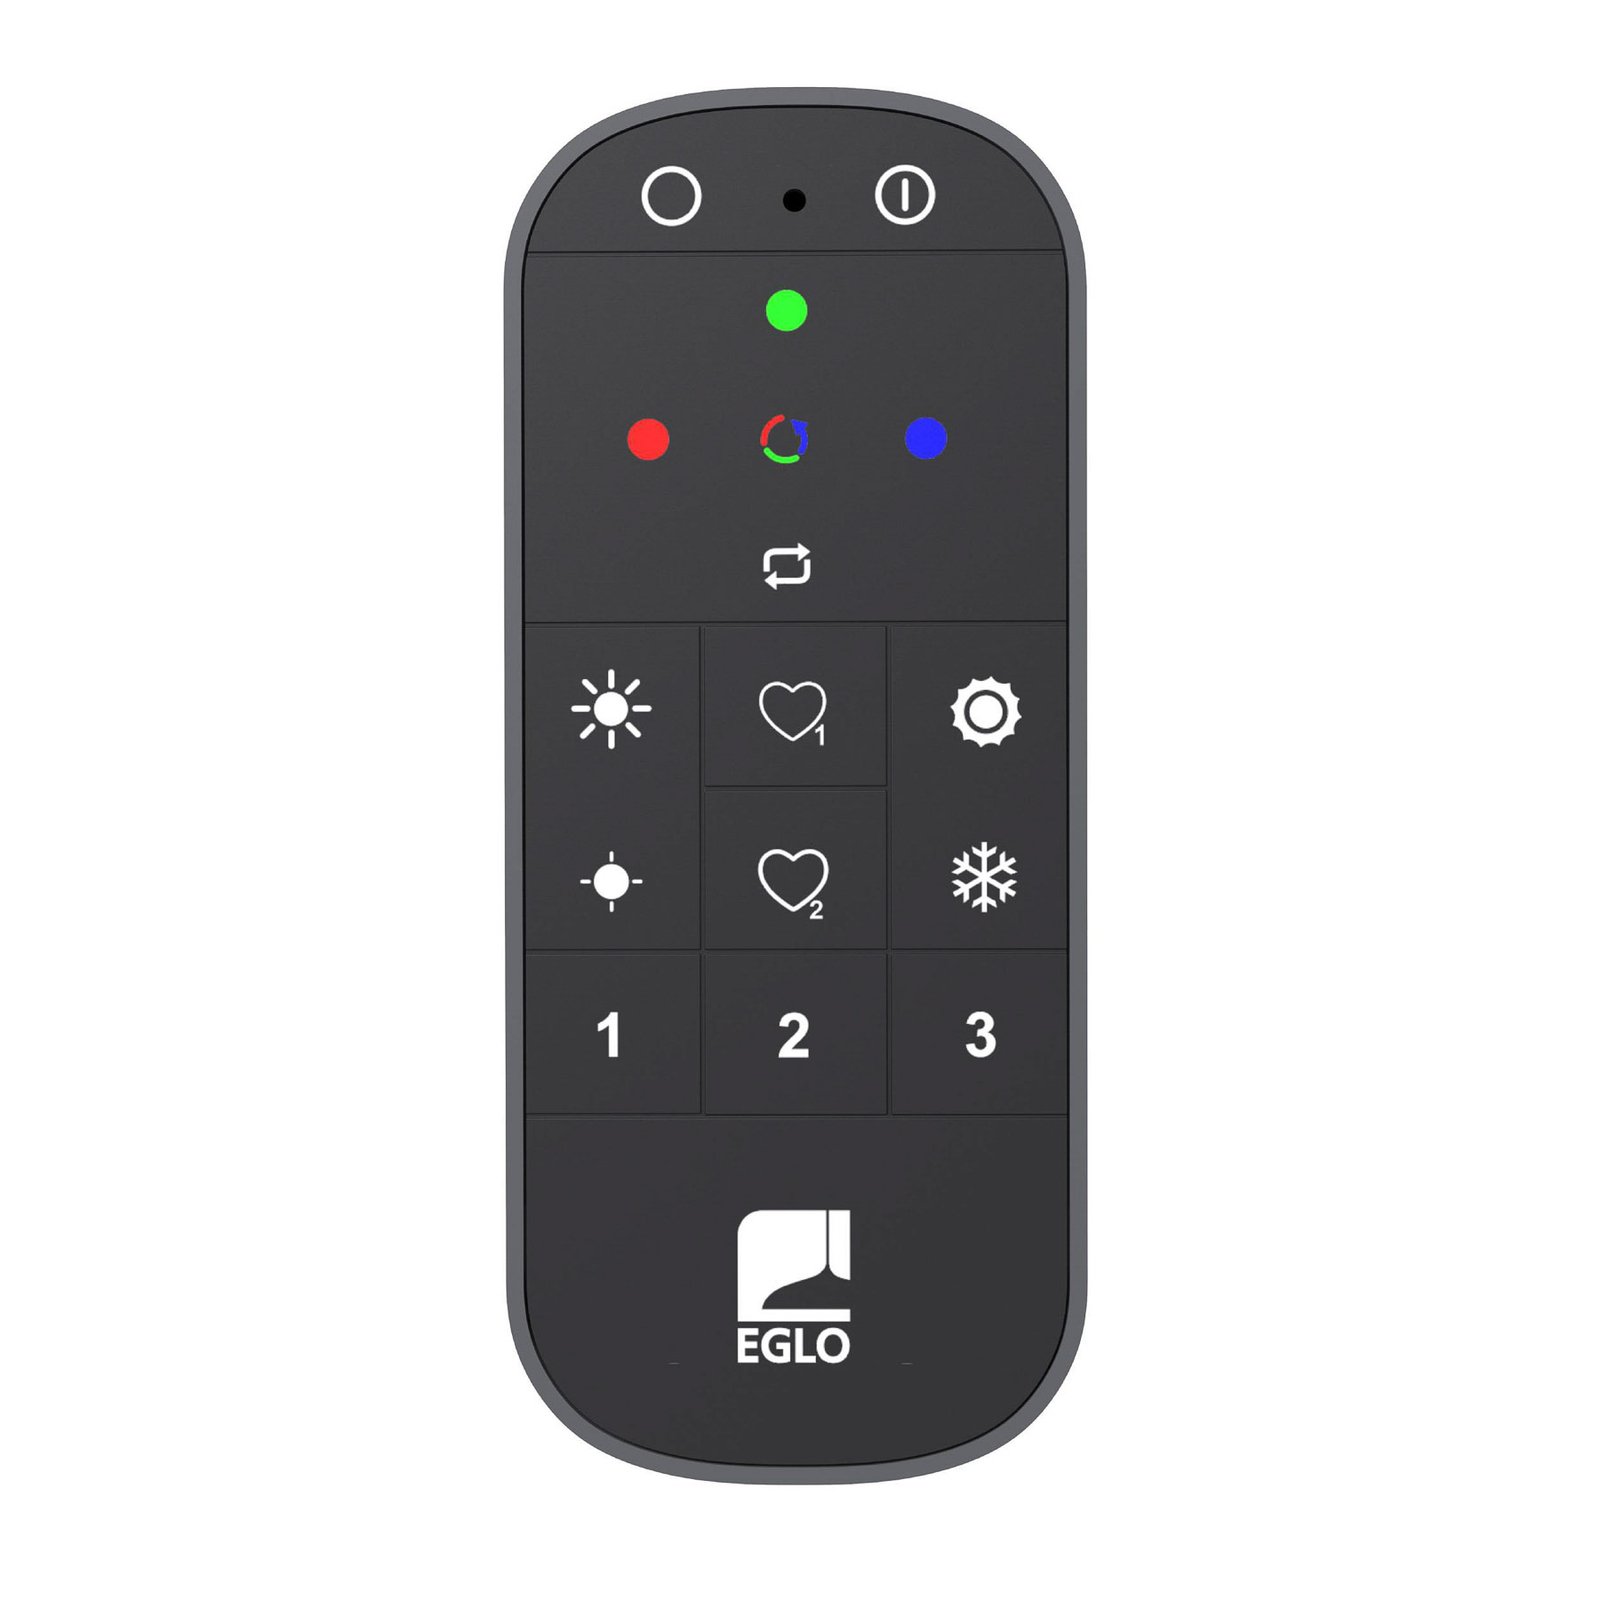 EGLO connect-z Remote 2.0 remote control